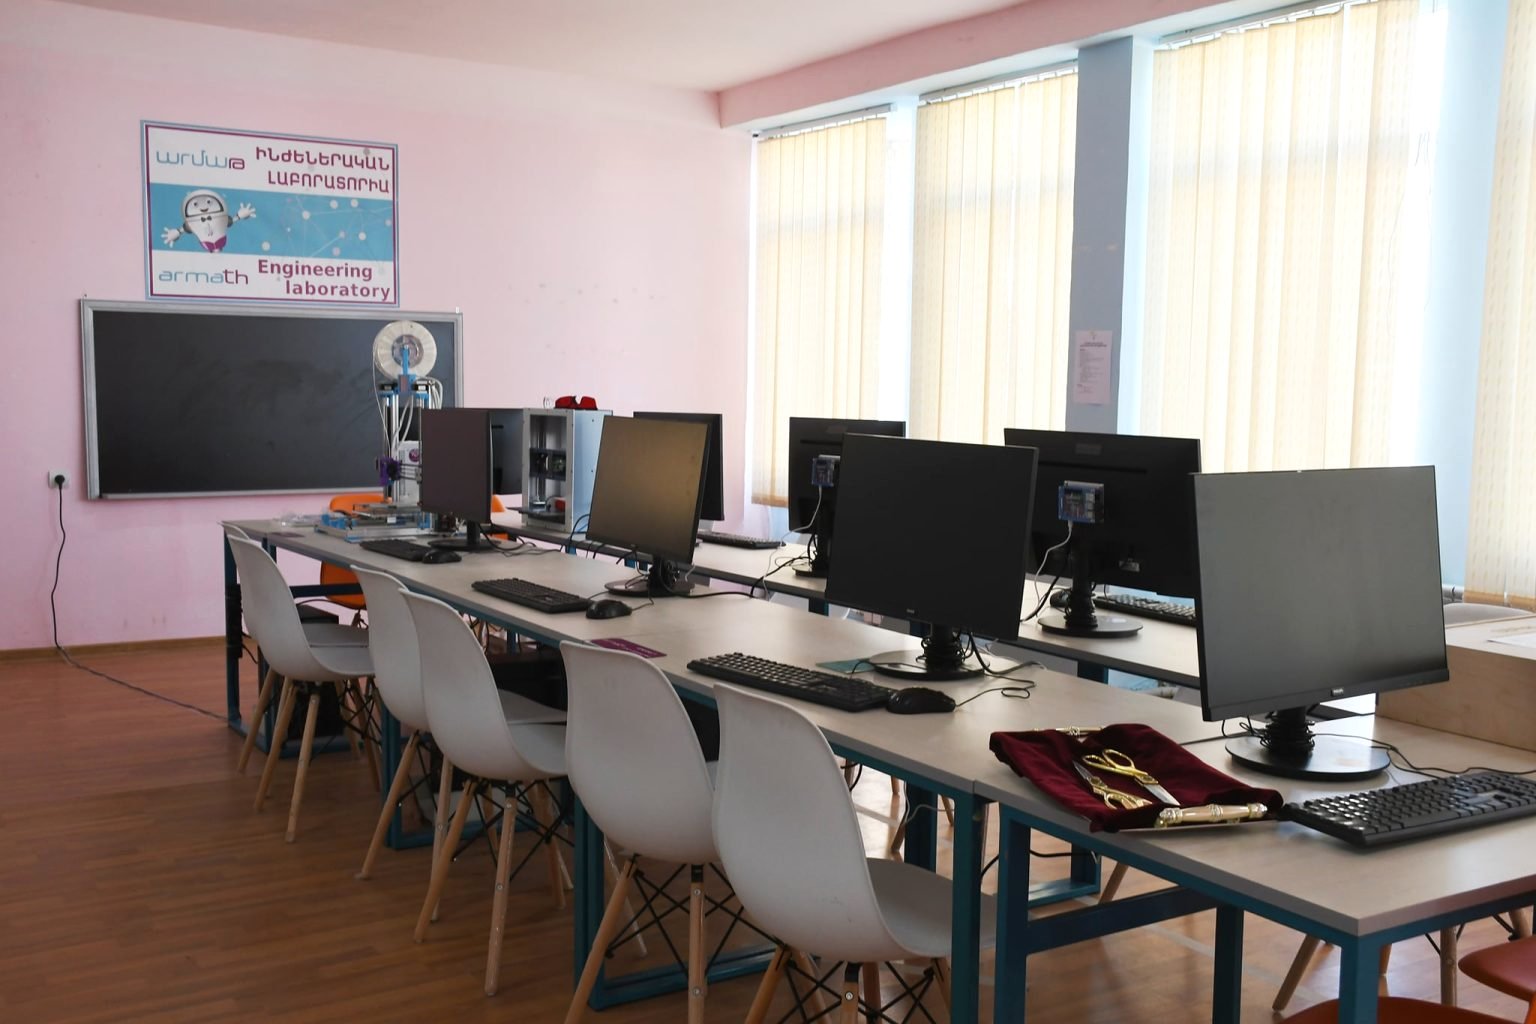 Բաղրամյան համայնքի միջնակարգ դպրոցում բացվել է«Արմաթ» ինժեներական լաբորատորիա